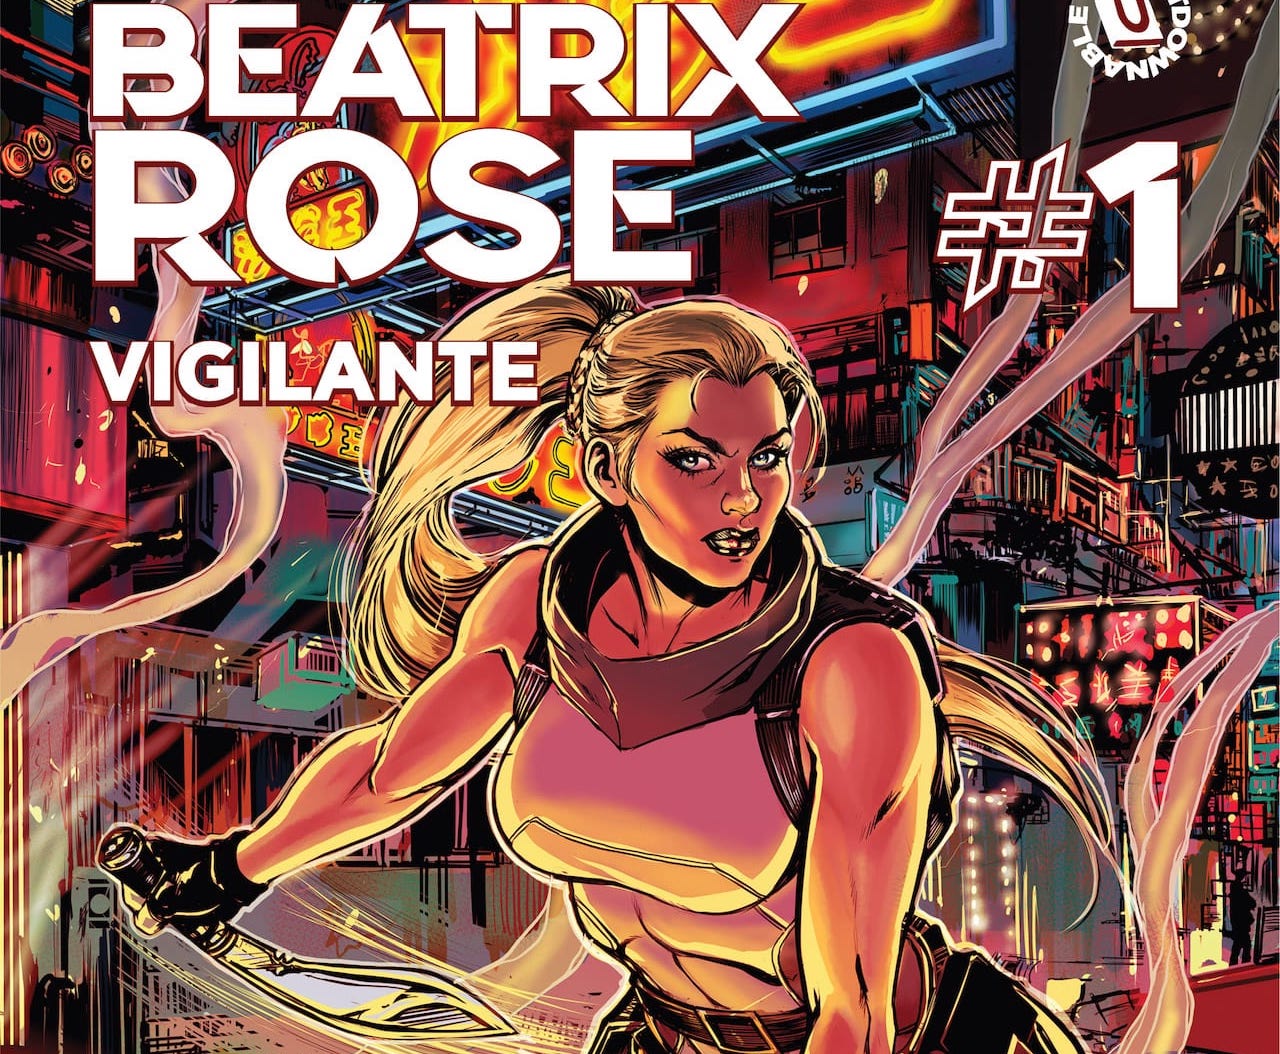 'Beatrix Rose: Vigilante' #1 is Tomb Raider meets James Bond